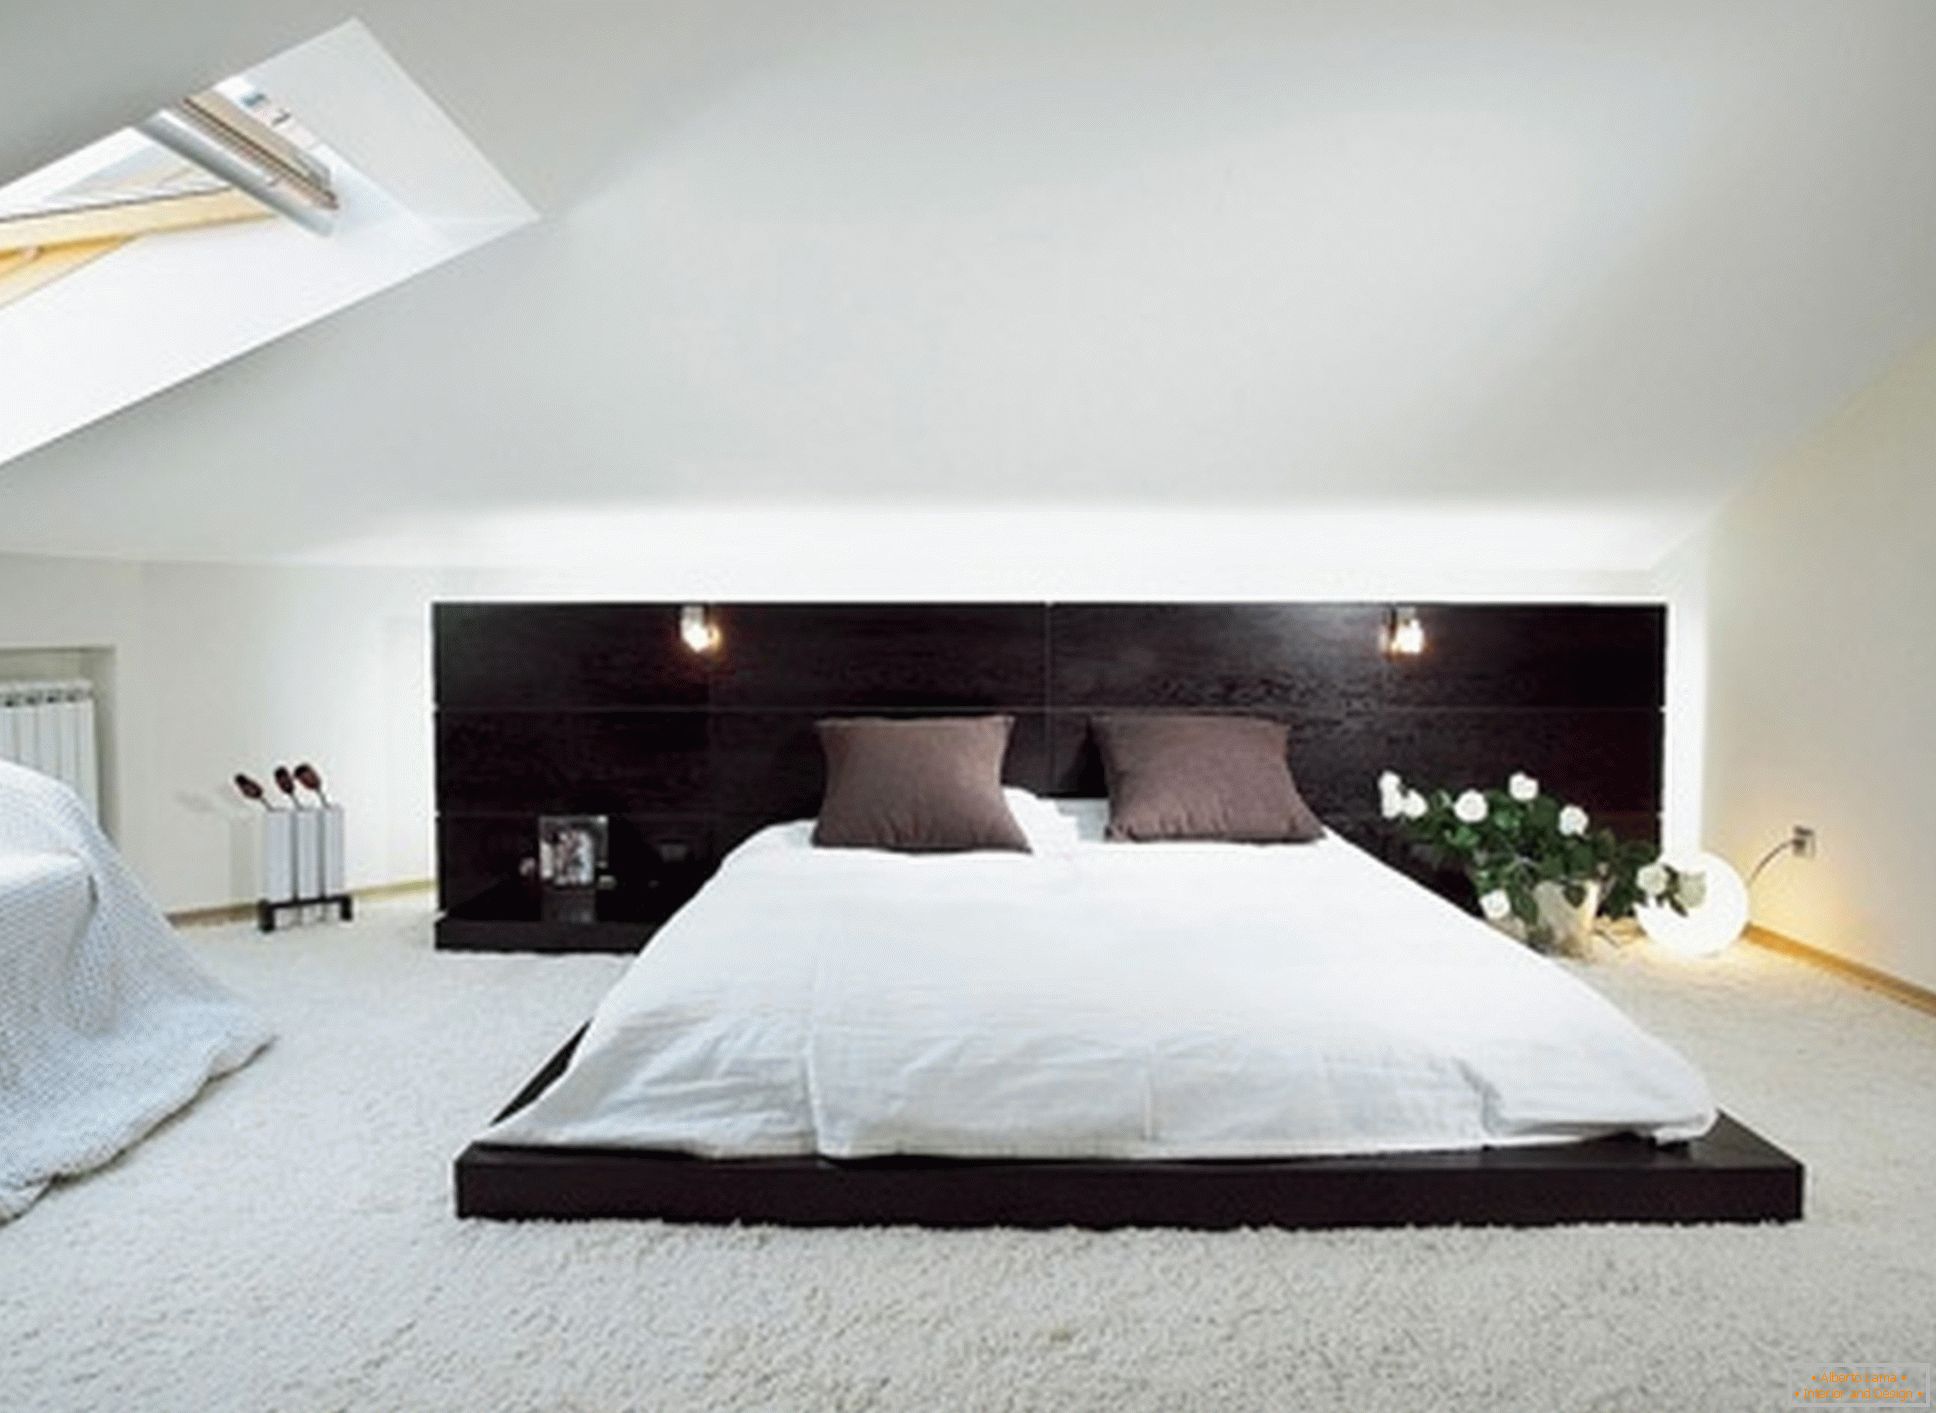 Luksusowa sypialnia w stylu minimalizmu - przykład udanego projektu małego pokoju na poddaszu.